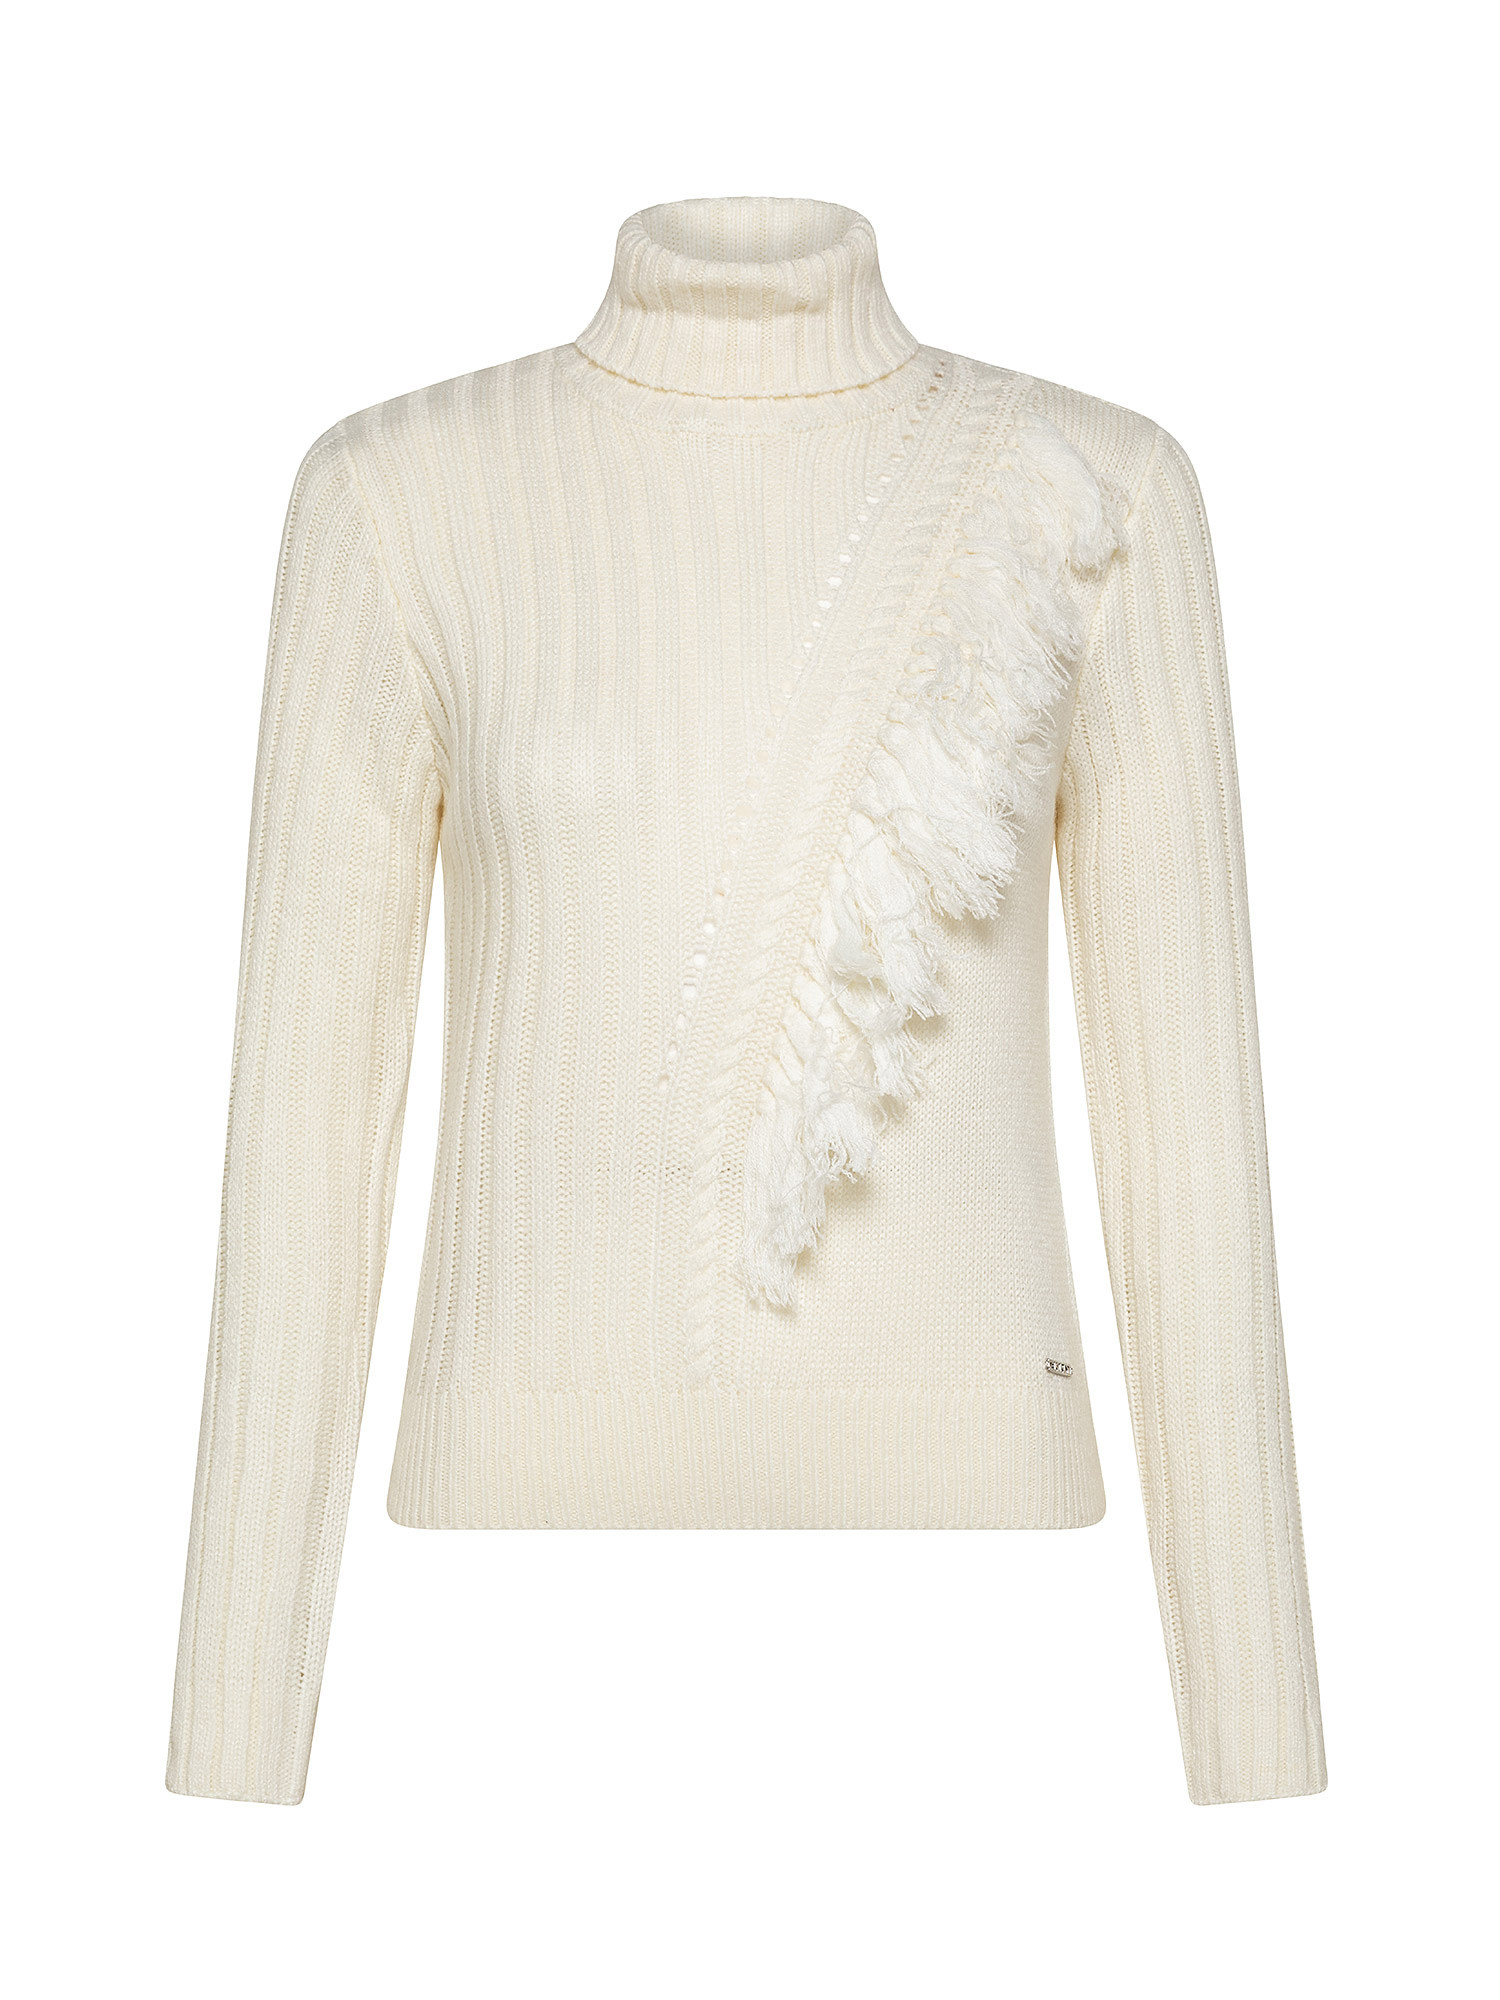 Turtleneck fringe front sweater, White Ivory, large image number 0